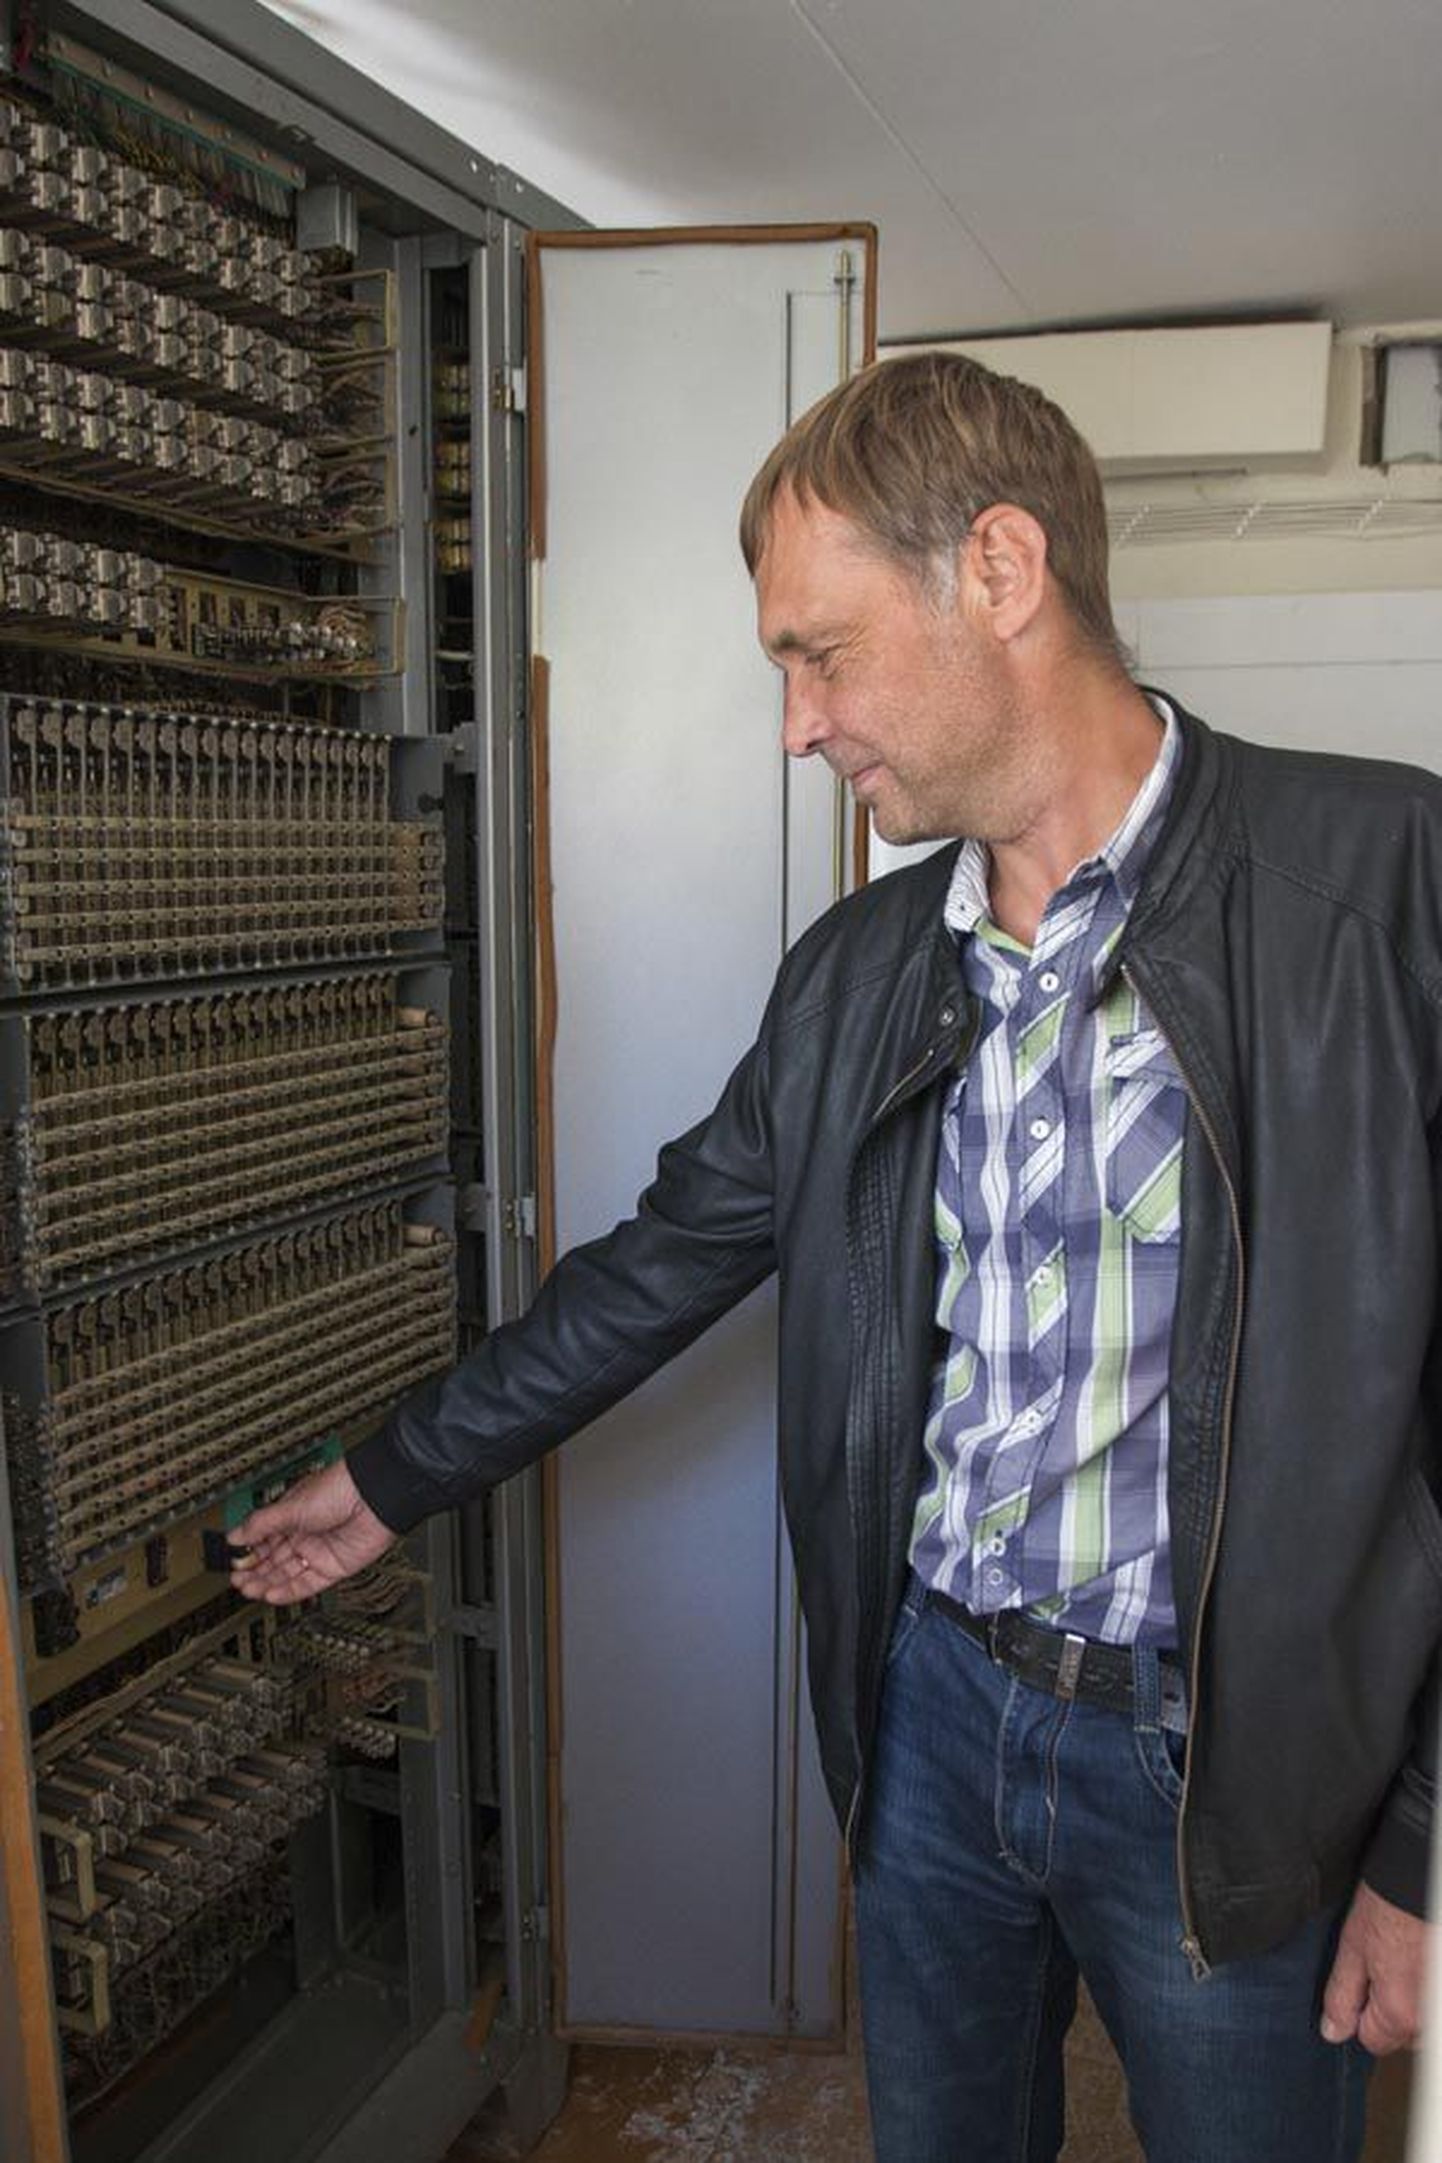 Telia Eesti võrguarengu insener Toomas Peterson lülitas 15. septembril Saarepeedi analoogjaamast voolu välja. Sektsioonkapi moodi jaam ise on suurem, kui kitsukeses ruumis pildile mahtus.